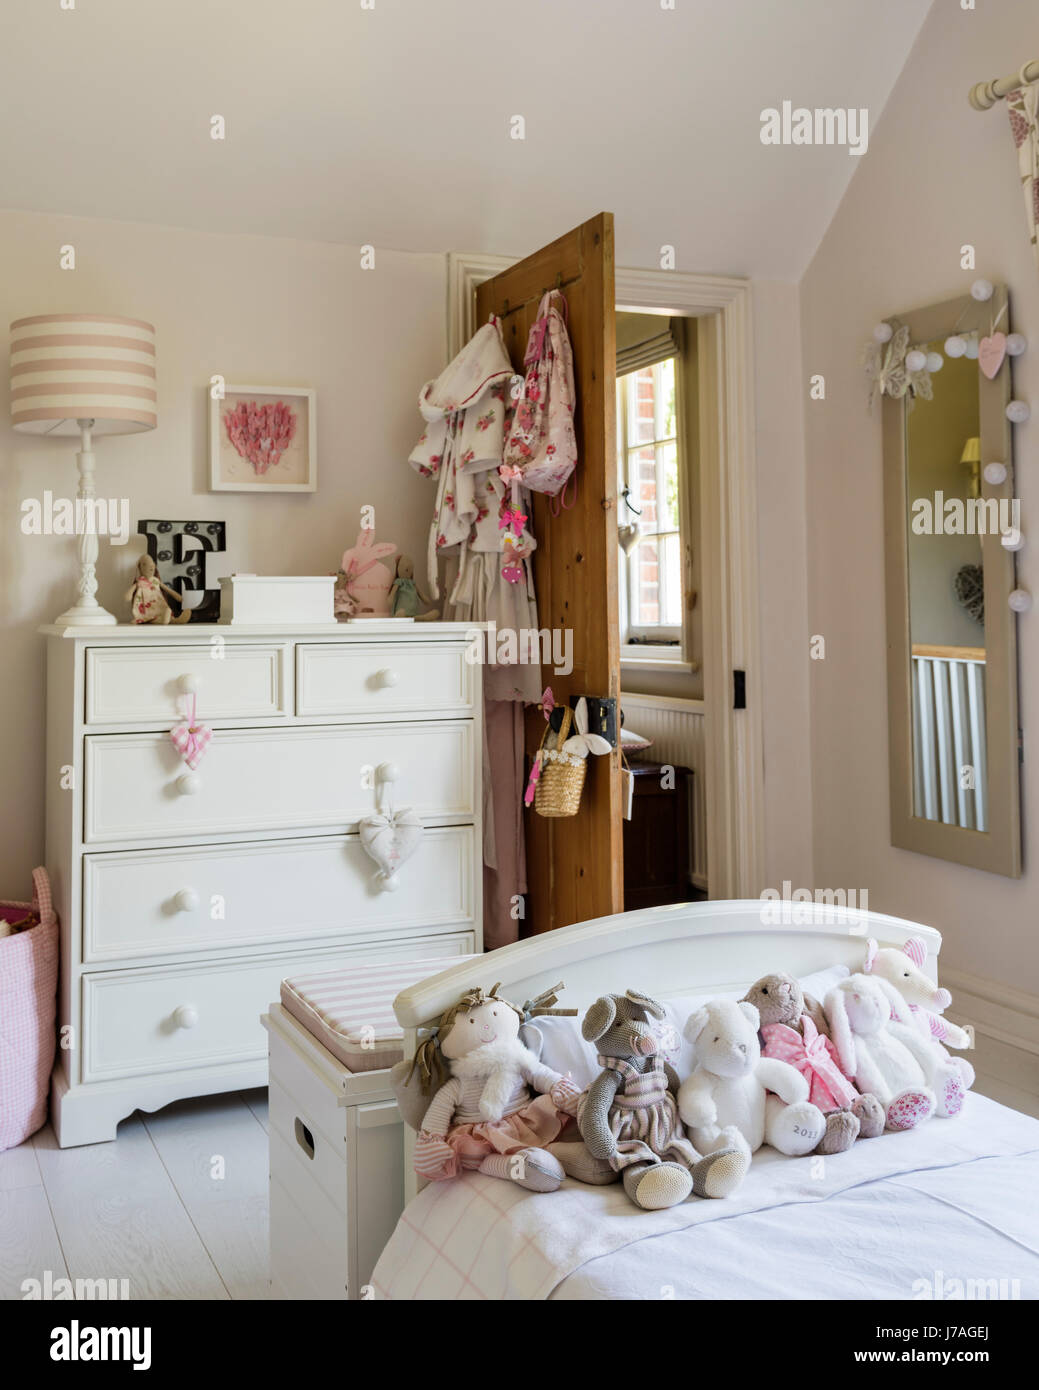 Un assortimento di orsetti di peluche sul letto in camera da letto per i bambini, la cassettiera è dipinta di Farrow & Ball sta indicando da Fairlily Foto Stock